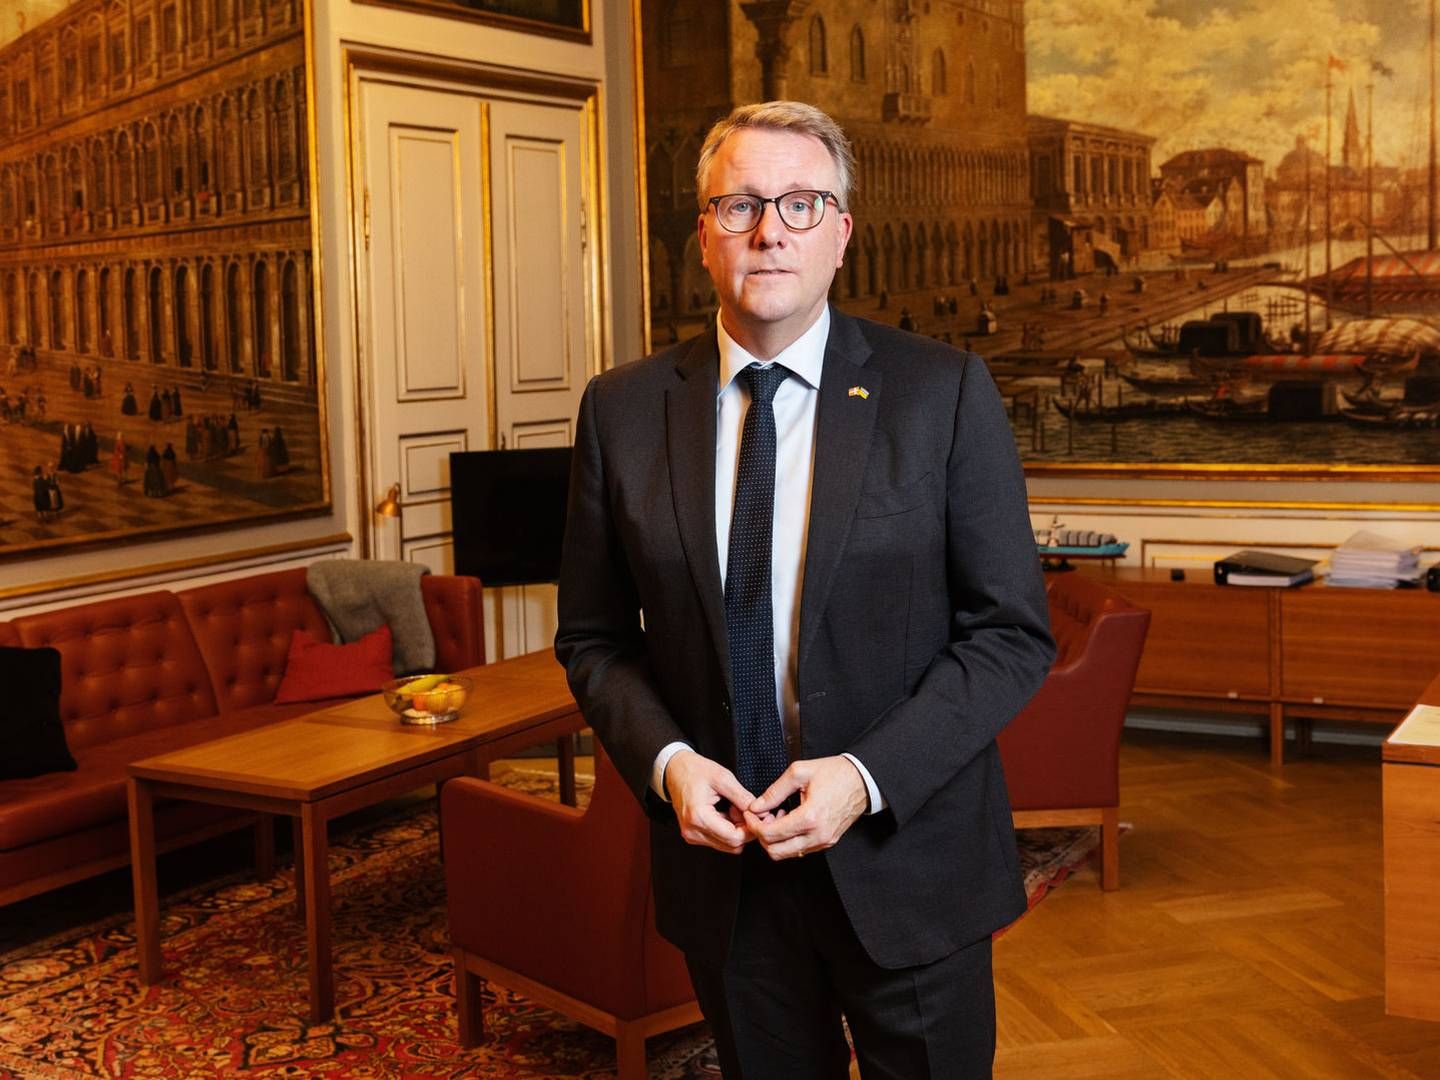 Erhvervsminister Morten Bødskov (S) vil opretholde skærpet prisovervågning året ud, men ikke dykke dybere.